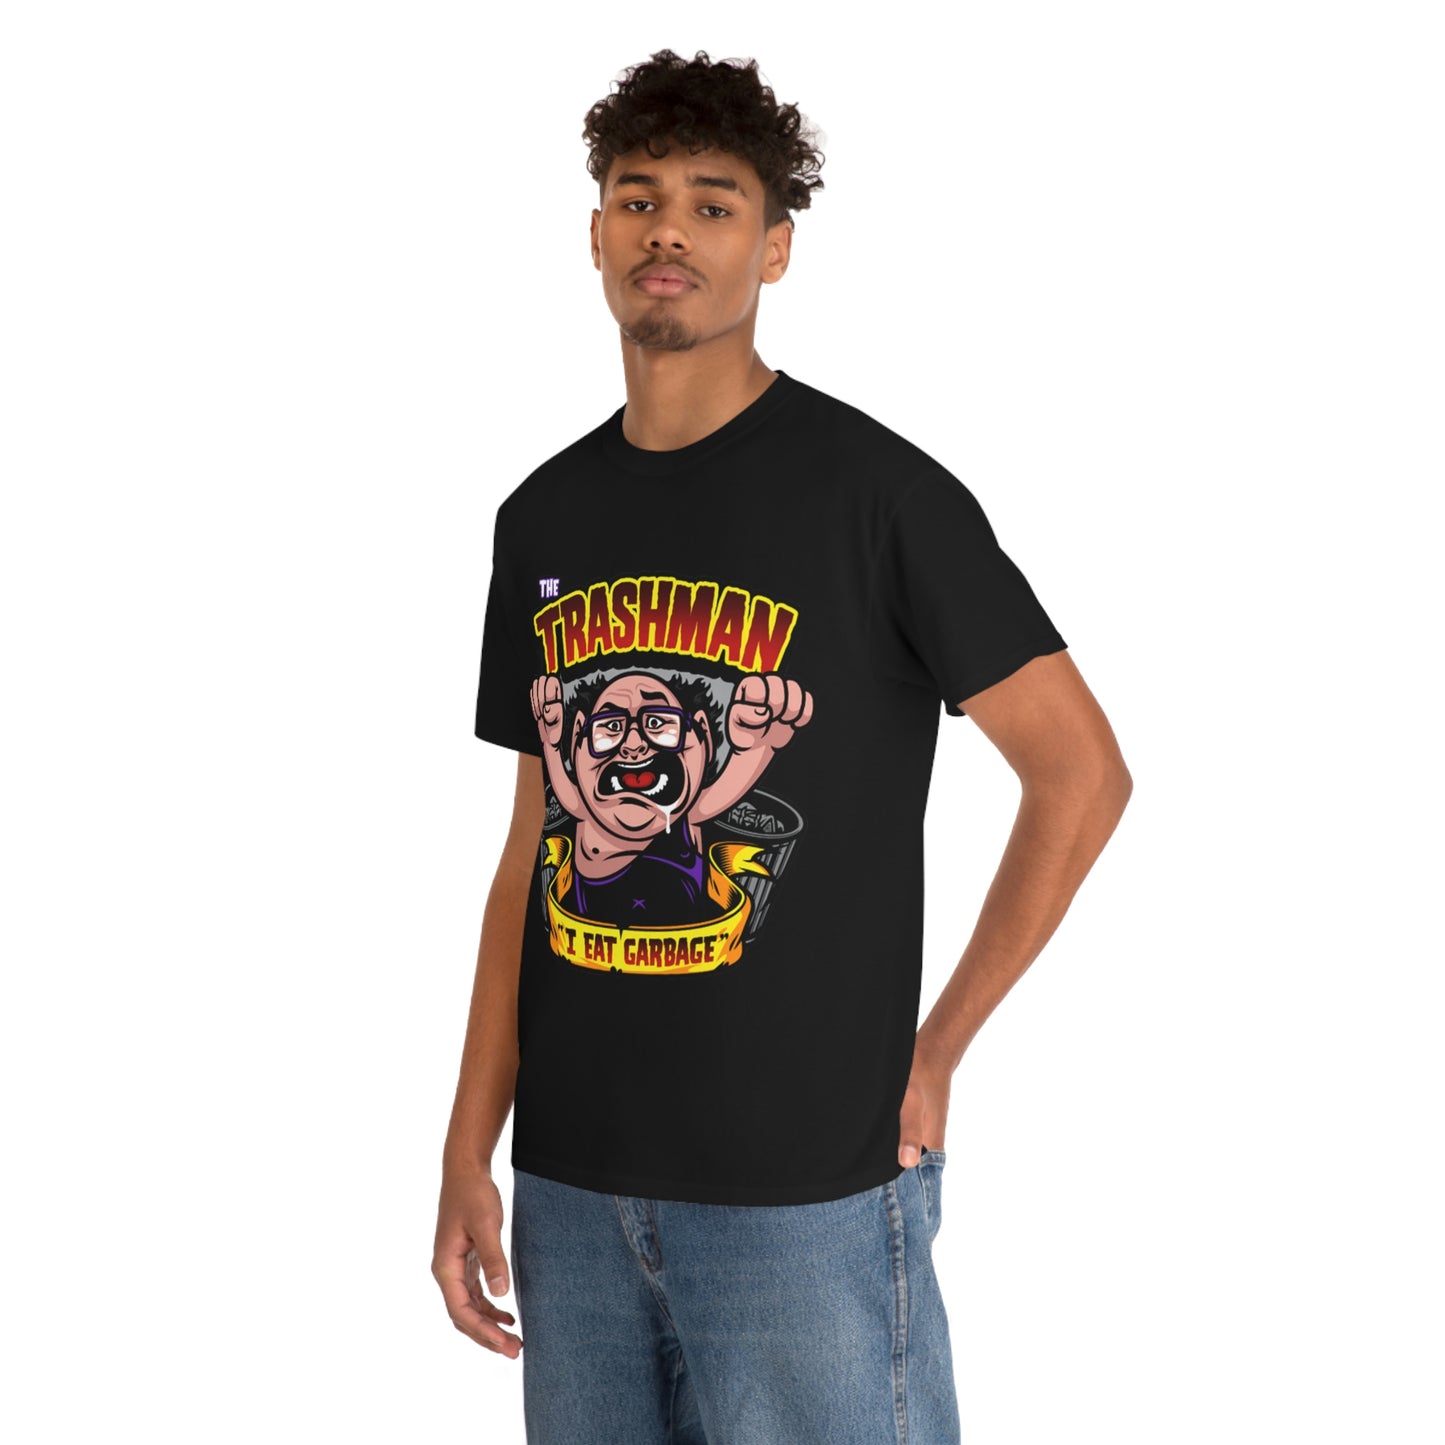 Unisex Graphic T-Shirts | the Trash Man T-Shirts | RetroTeeShop